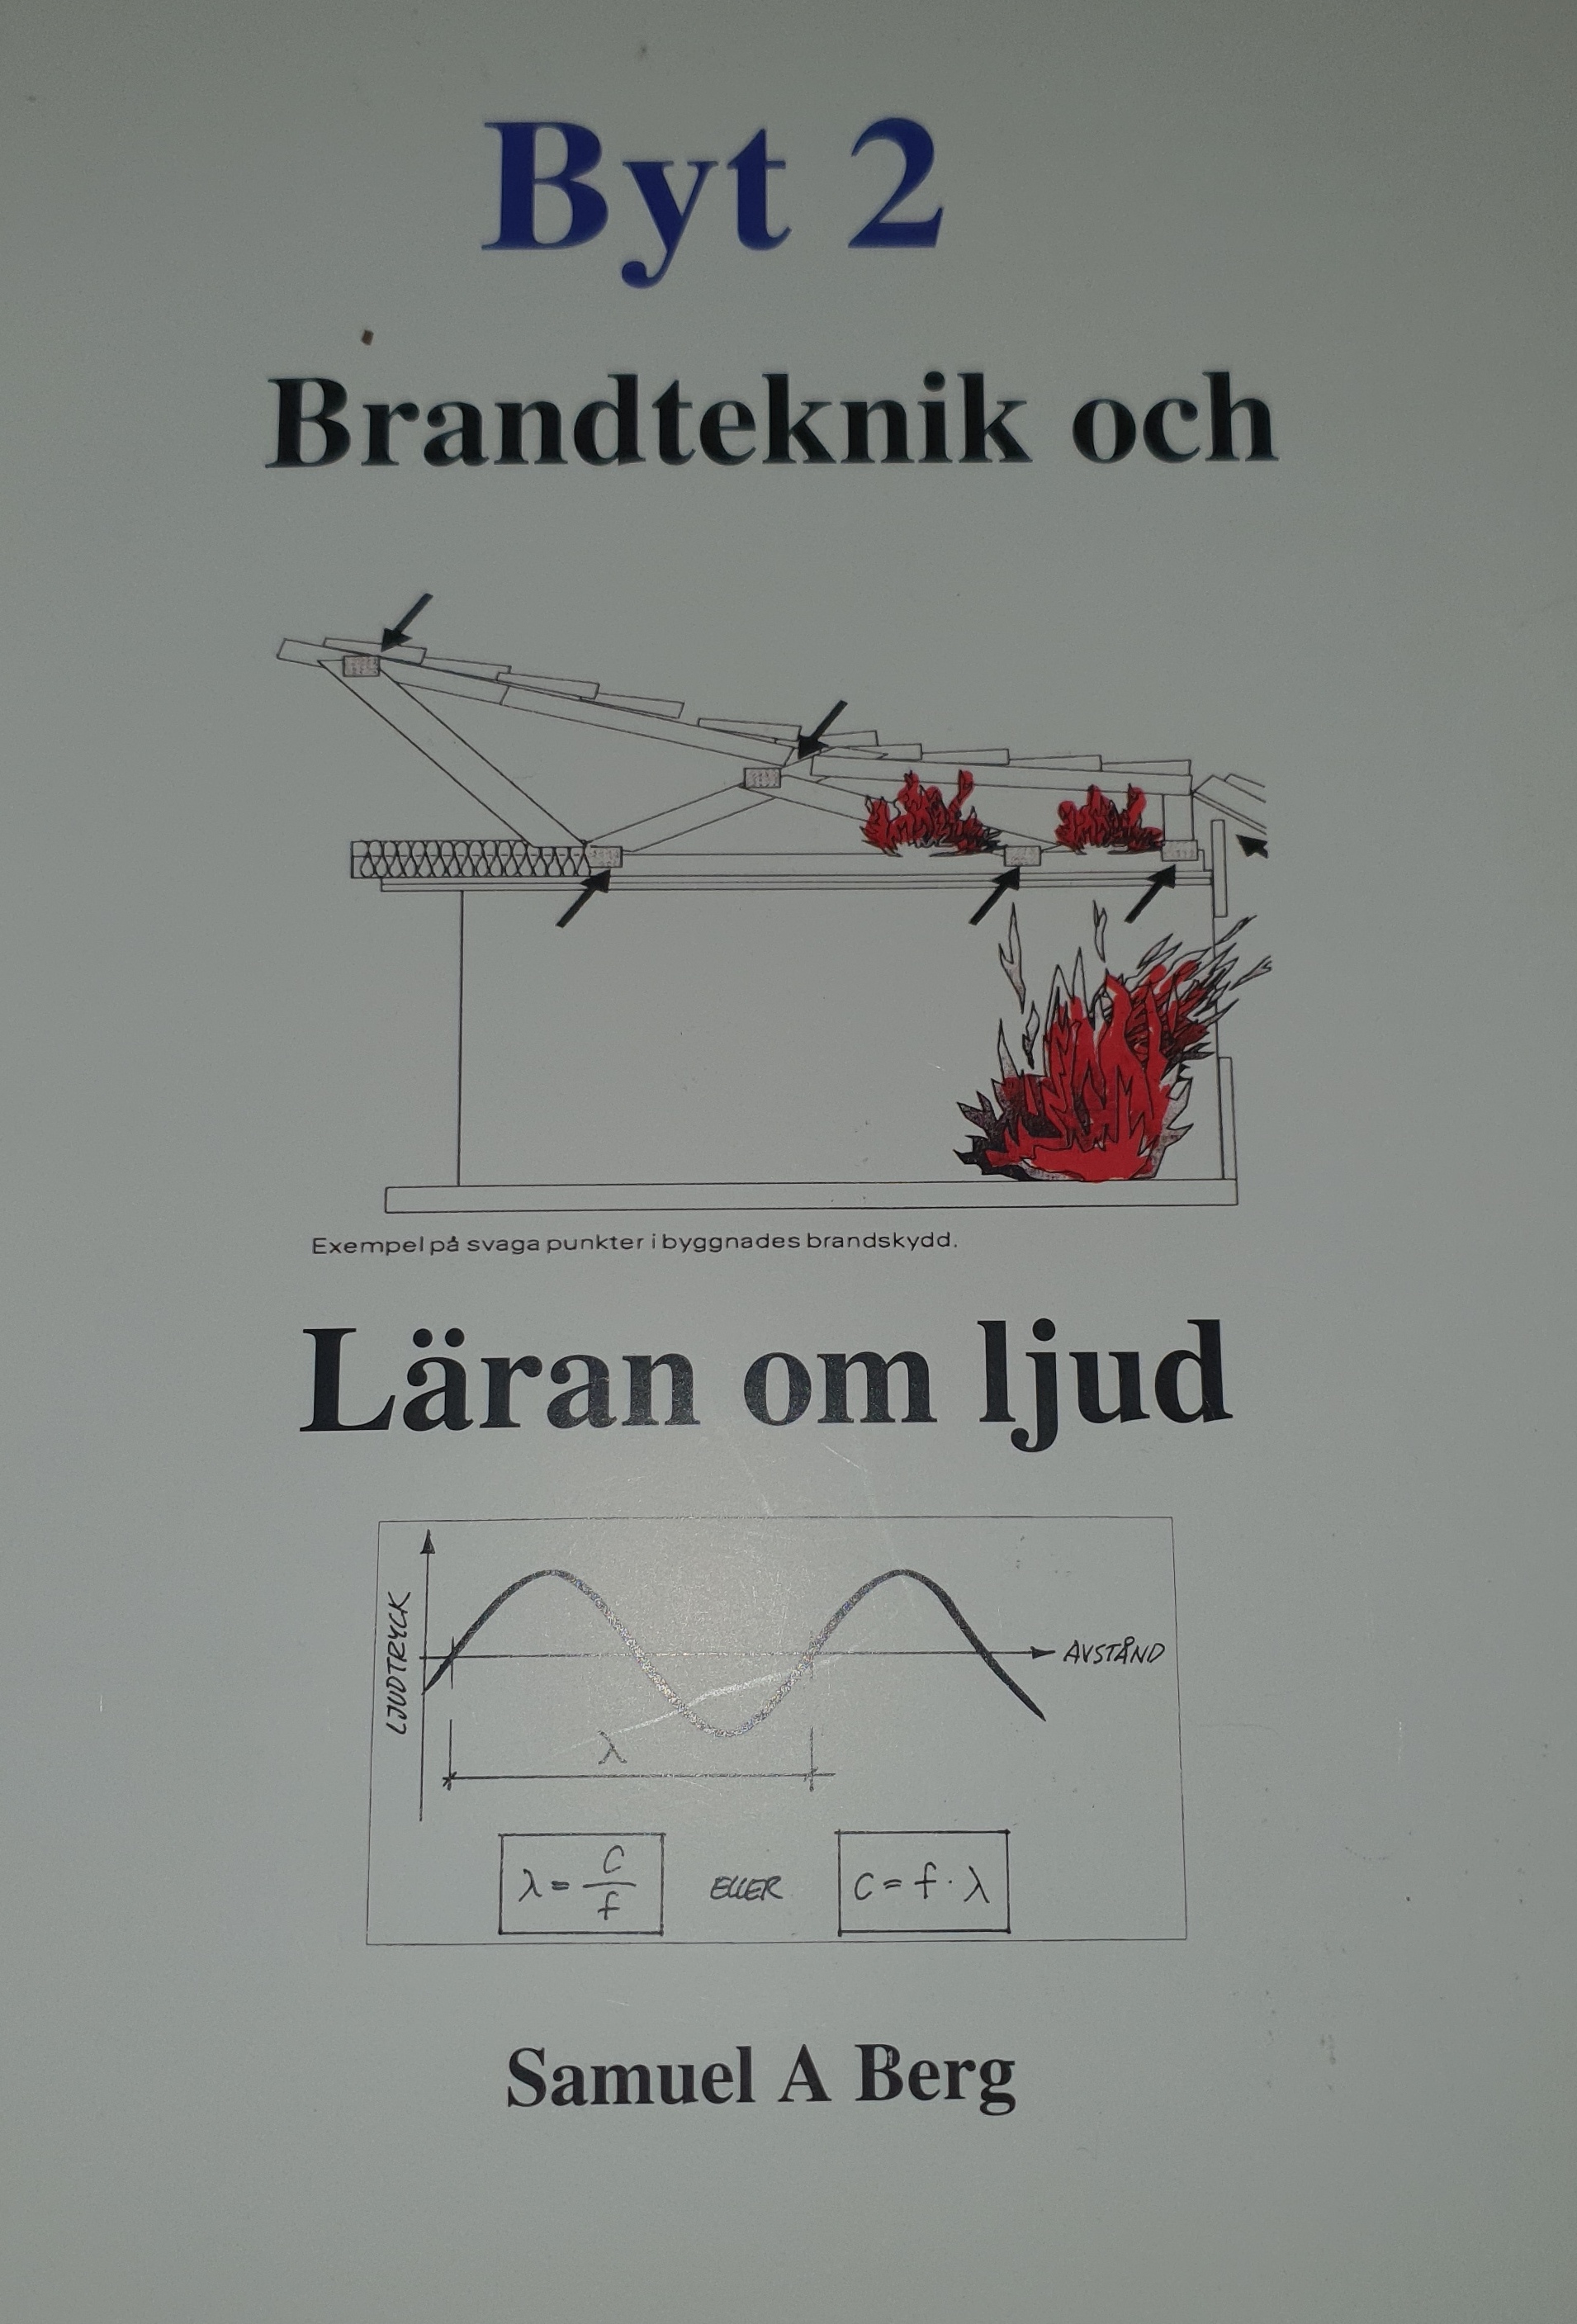 Byt 2 - Brandteknik och läran om ljud; Samuel A. Berg; 2011